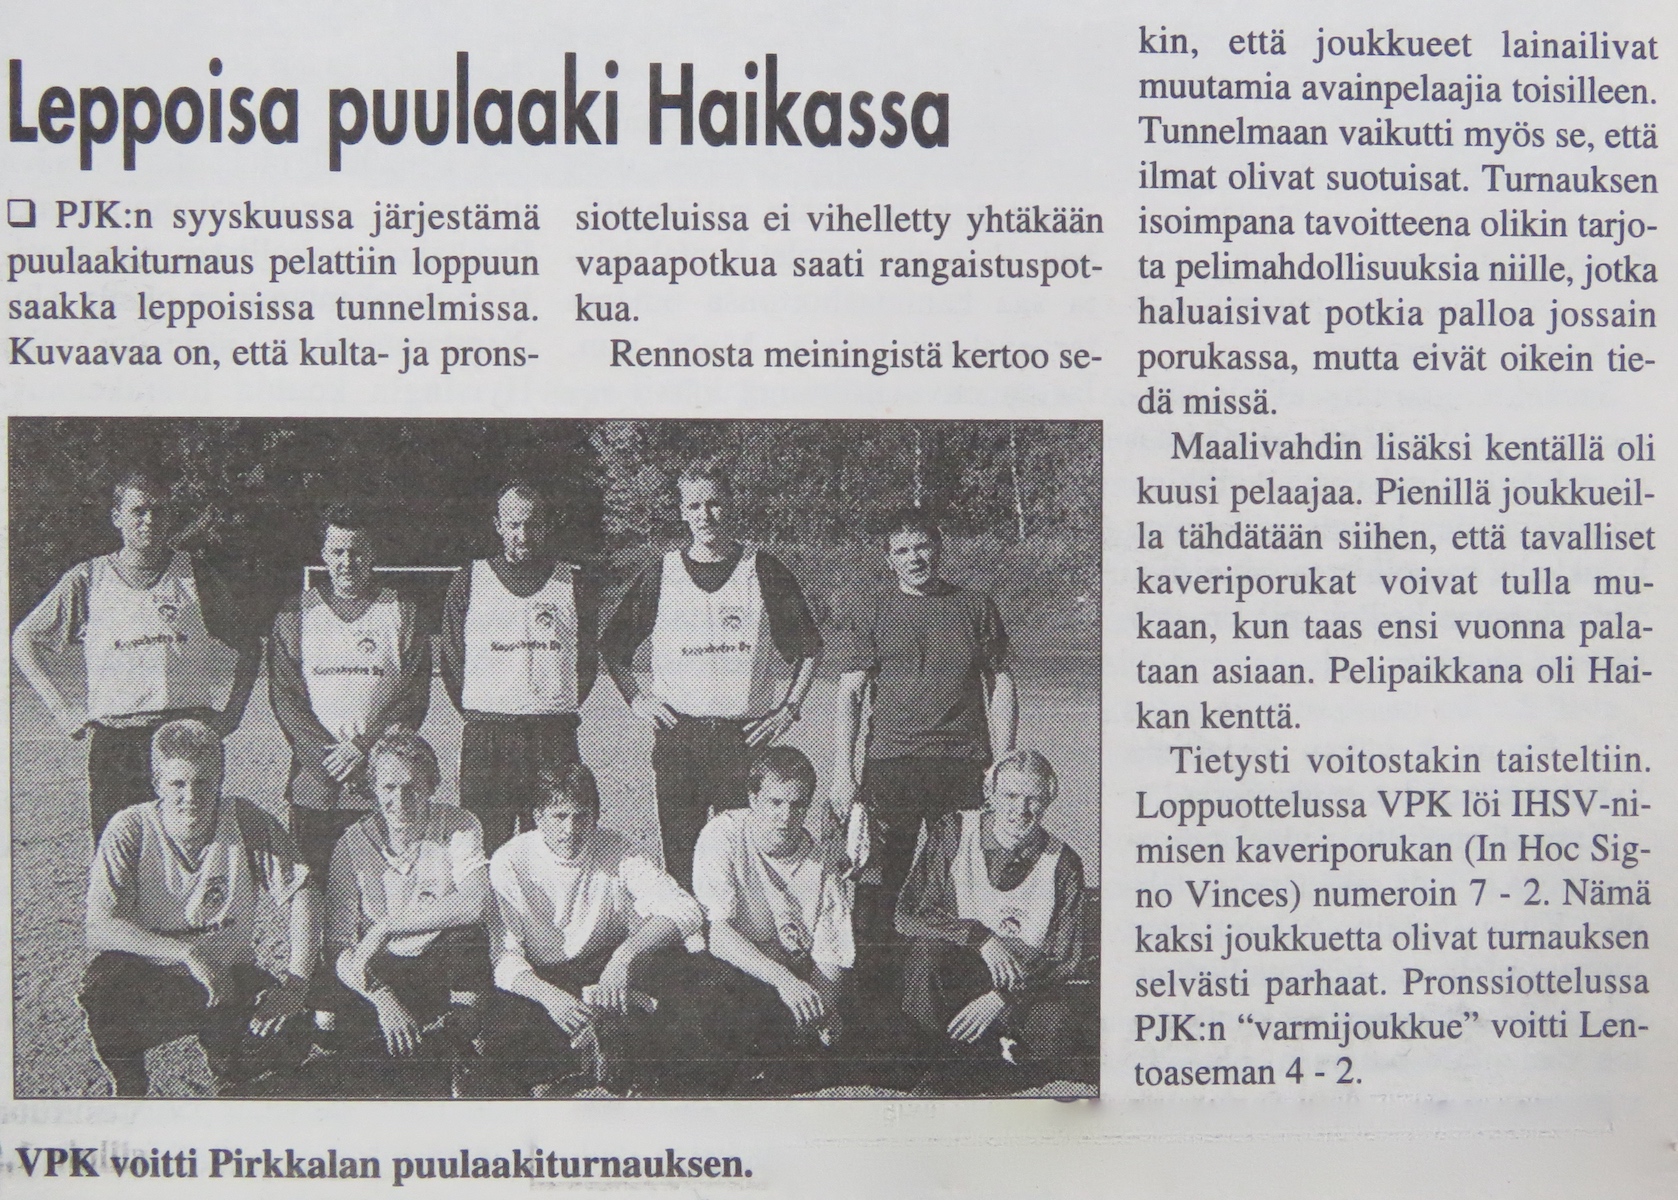 Turnausraportti Pirkkalaisessa 11.10. 2000